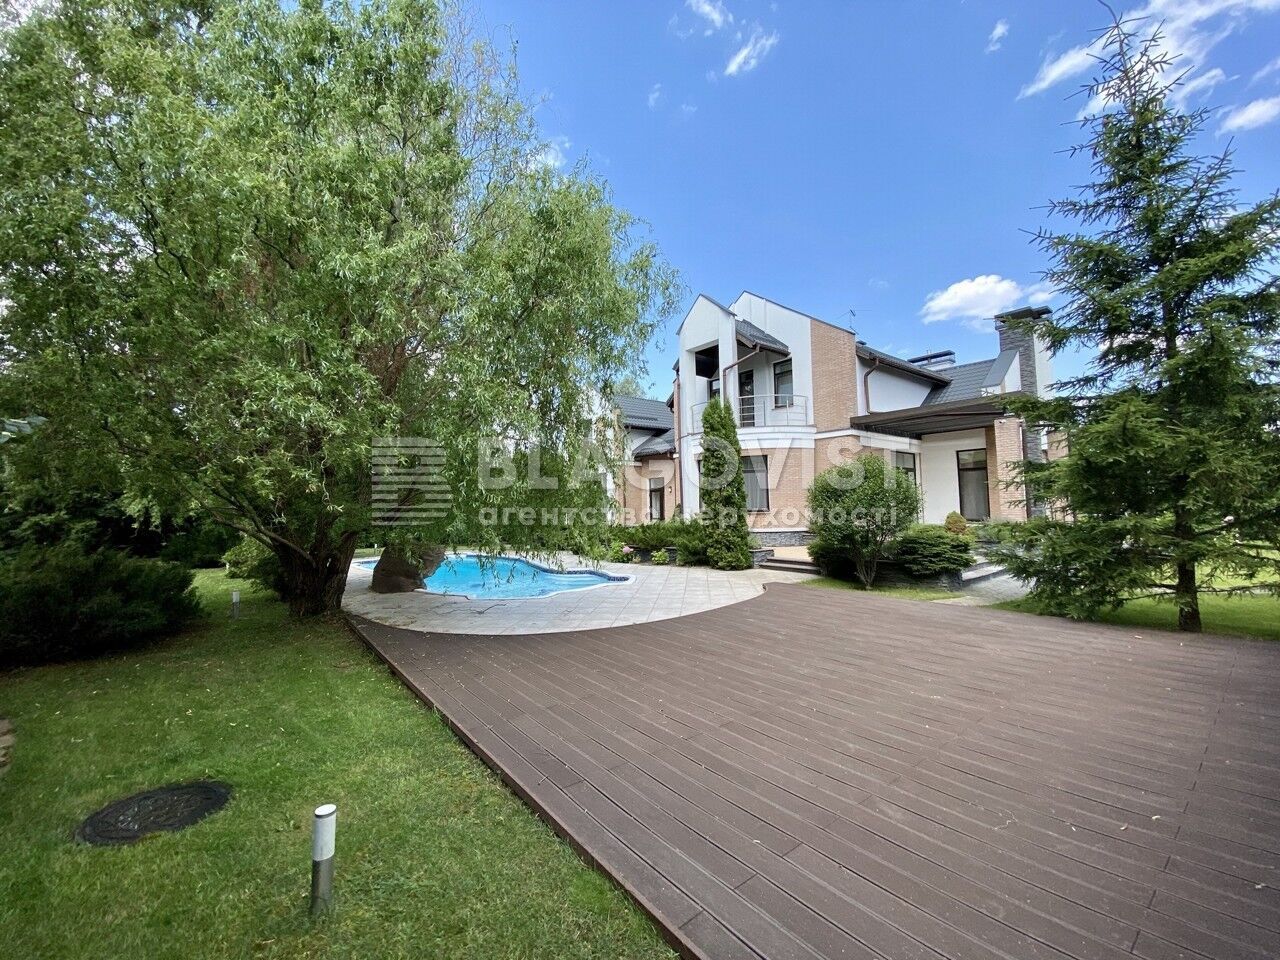 Цена аренды дома с бассейном – 245 тыс. грн в месяц